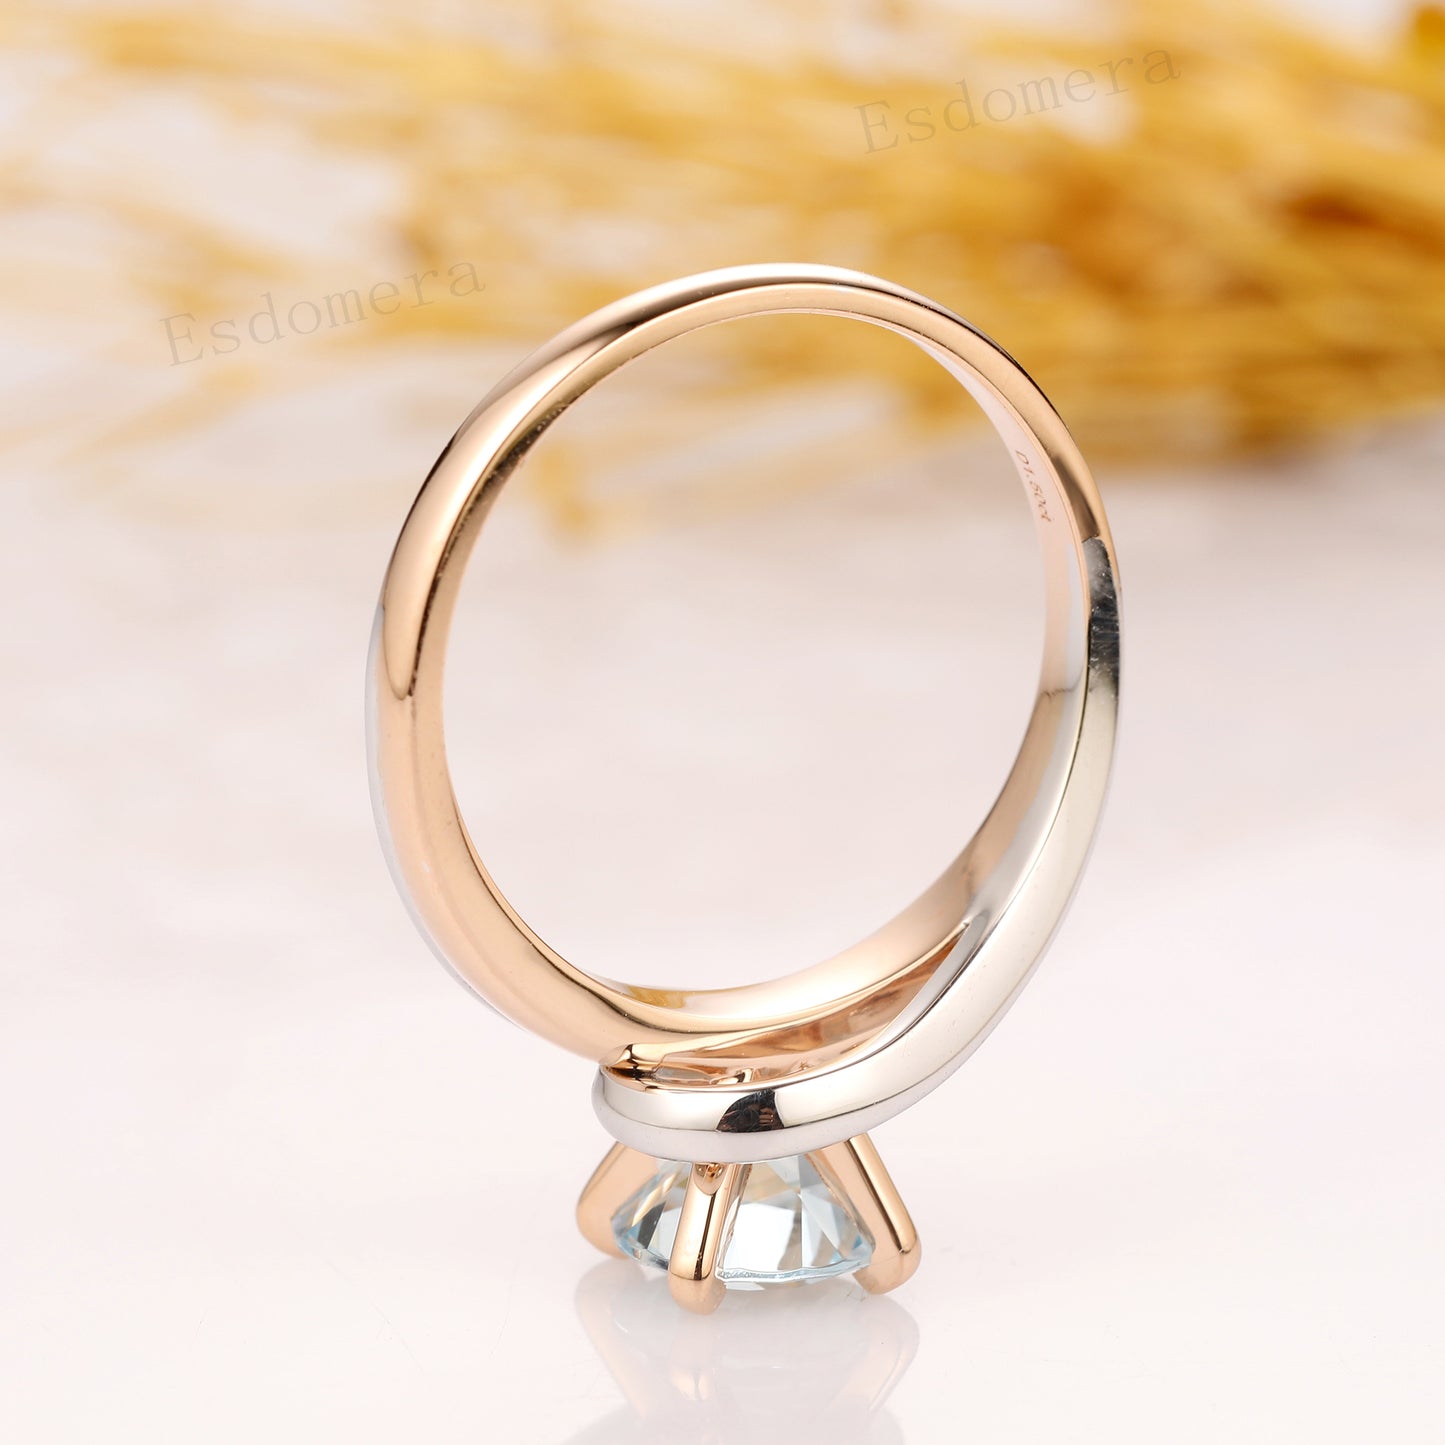 Two Tone Gold Aquamarine Ring, 1.5CT Round Aquamarine Solitaire Engagement Ring